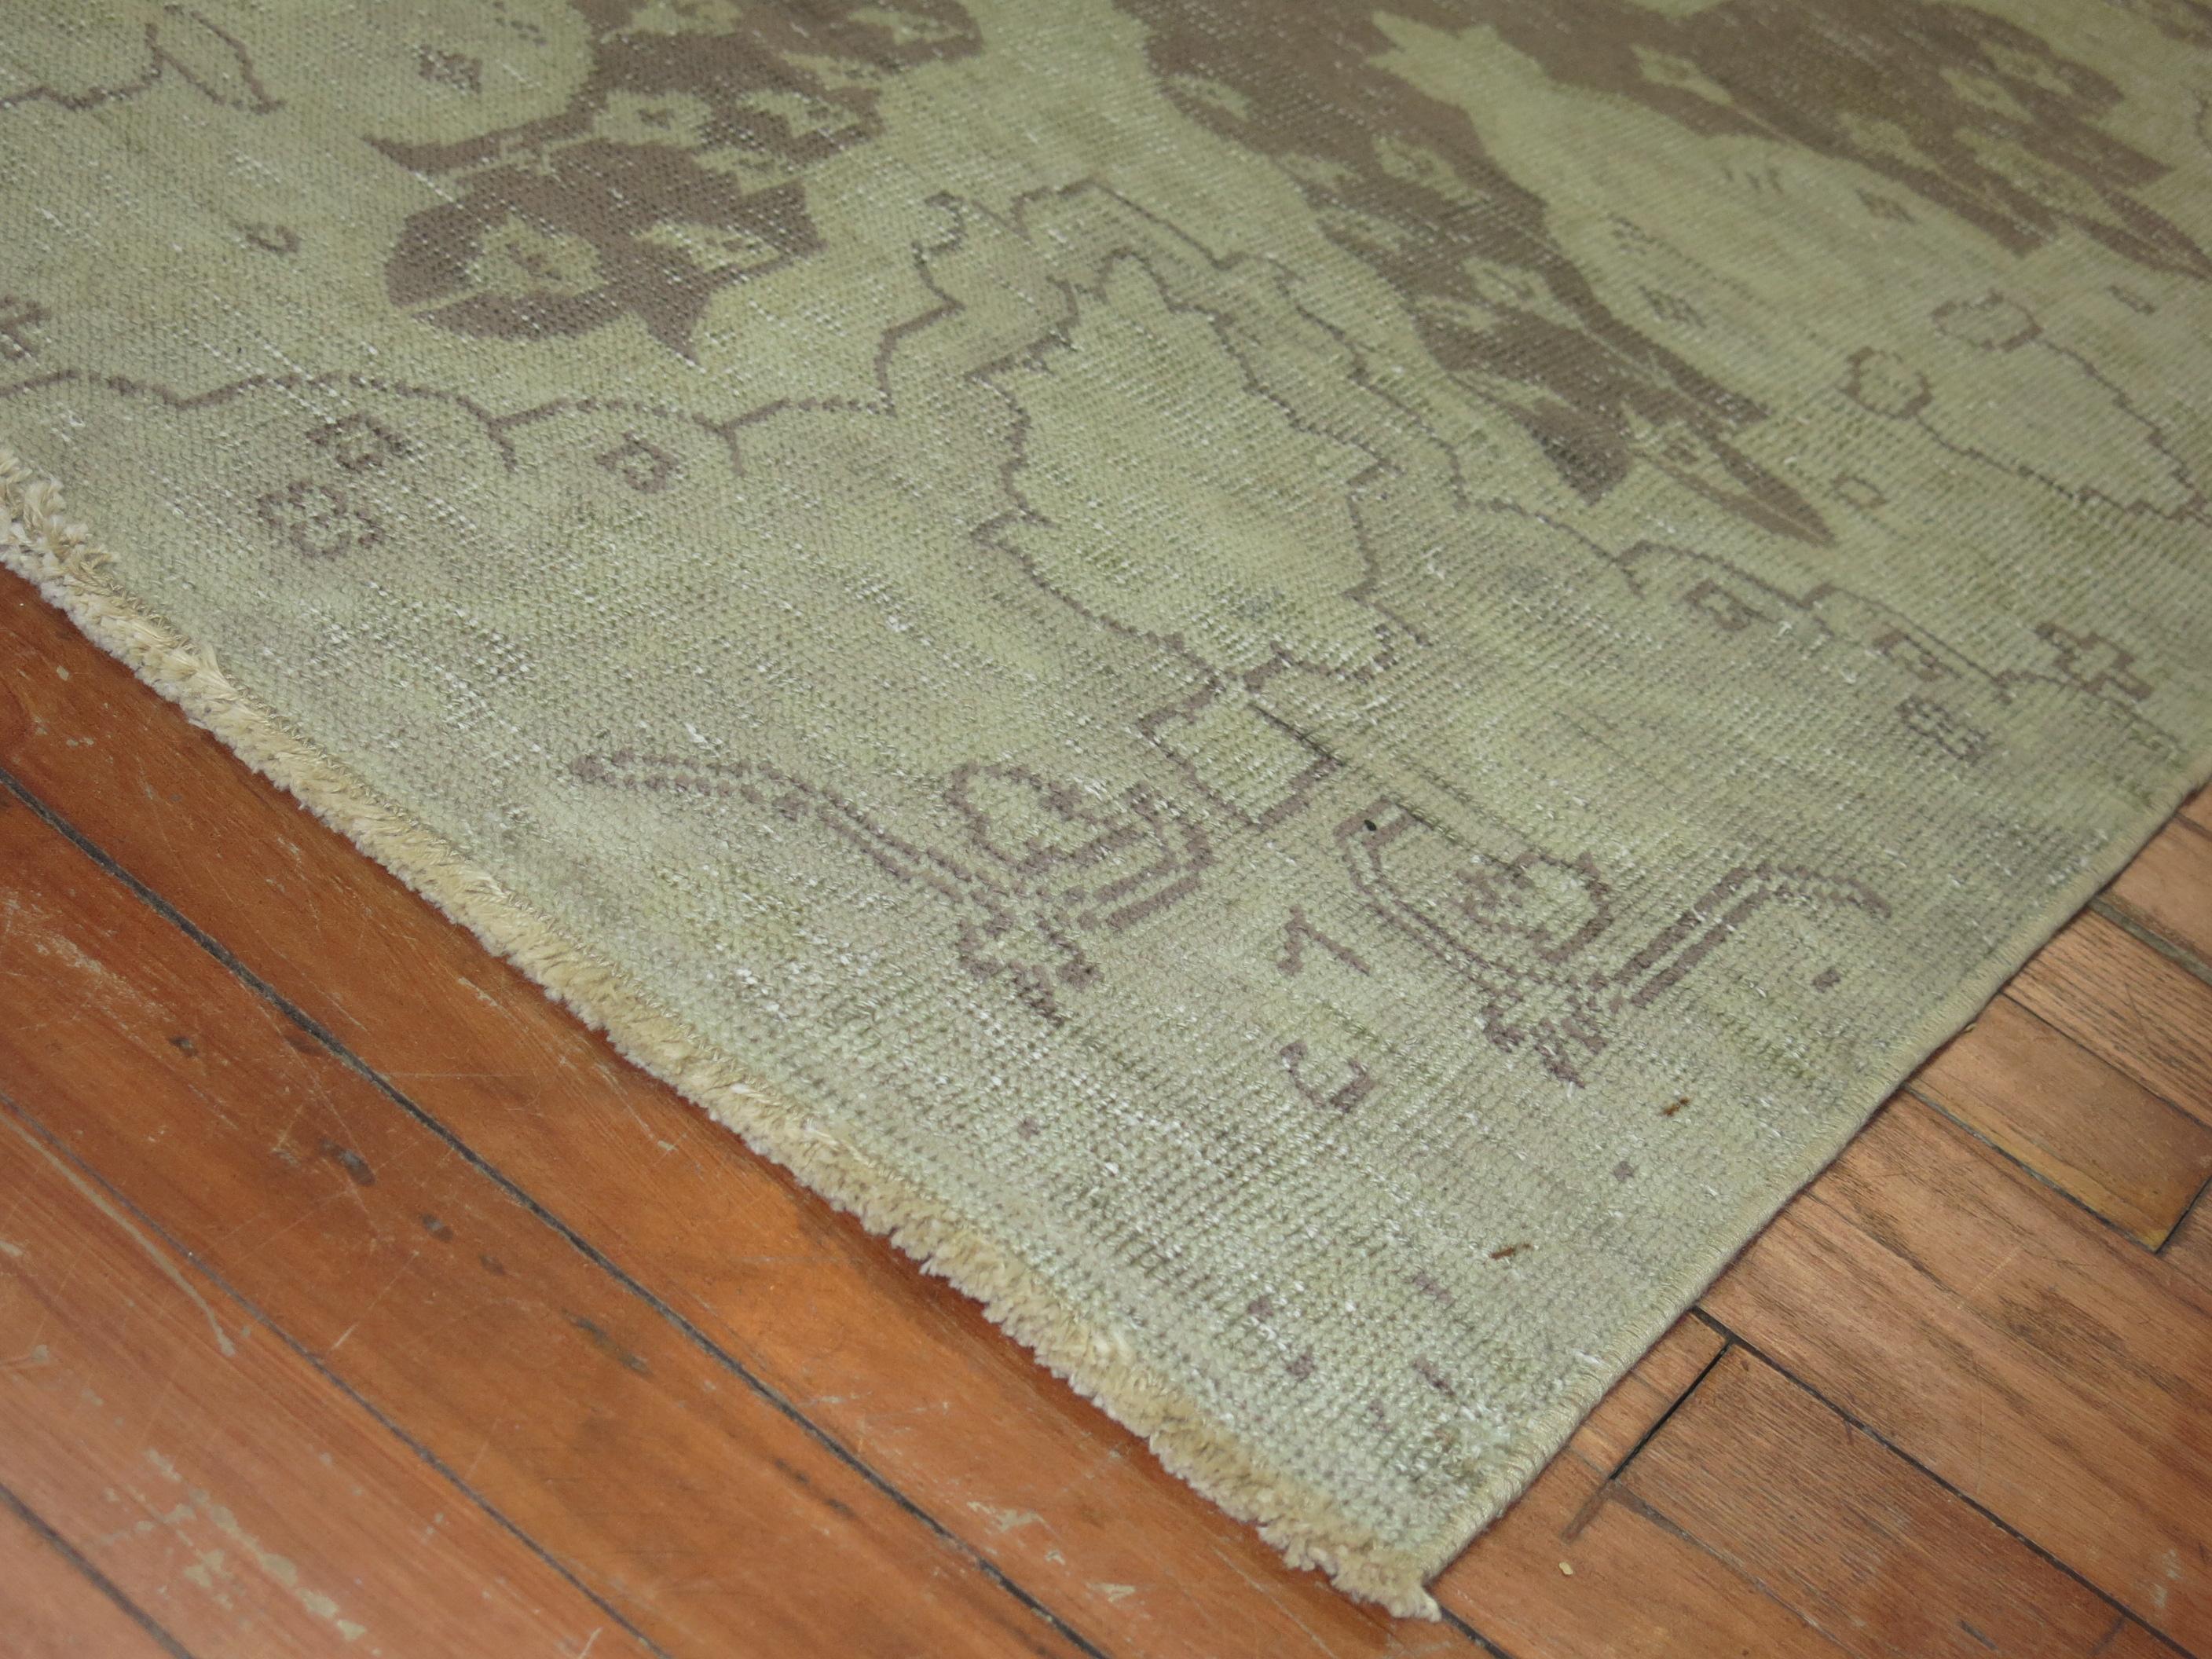 Zimmer Größe frühen 20. Jahrhundert Shabby Chic antiken grauen Feld Oushak Teppich.
Wir lieben die natürlichen Abnutzungserscheinungen dieses Teppichs, denn sie zeigen einen echten Vorgeschmack auf das Leben, das er bereits hinter sich hat.